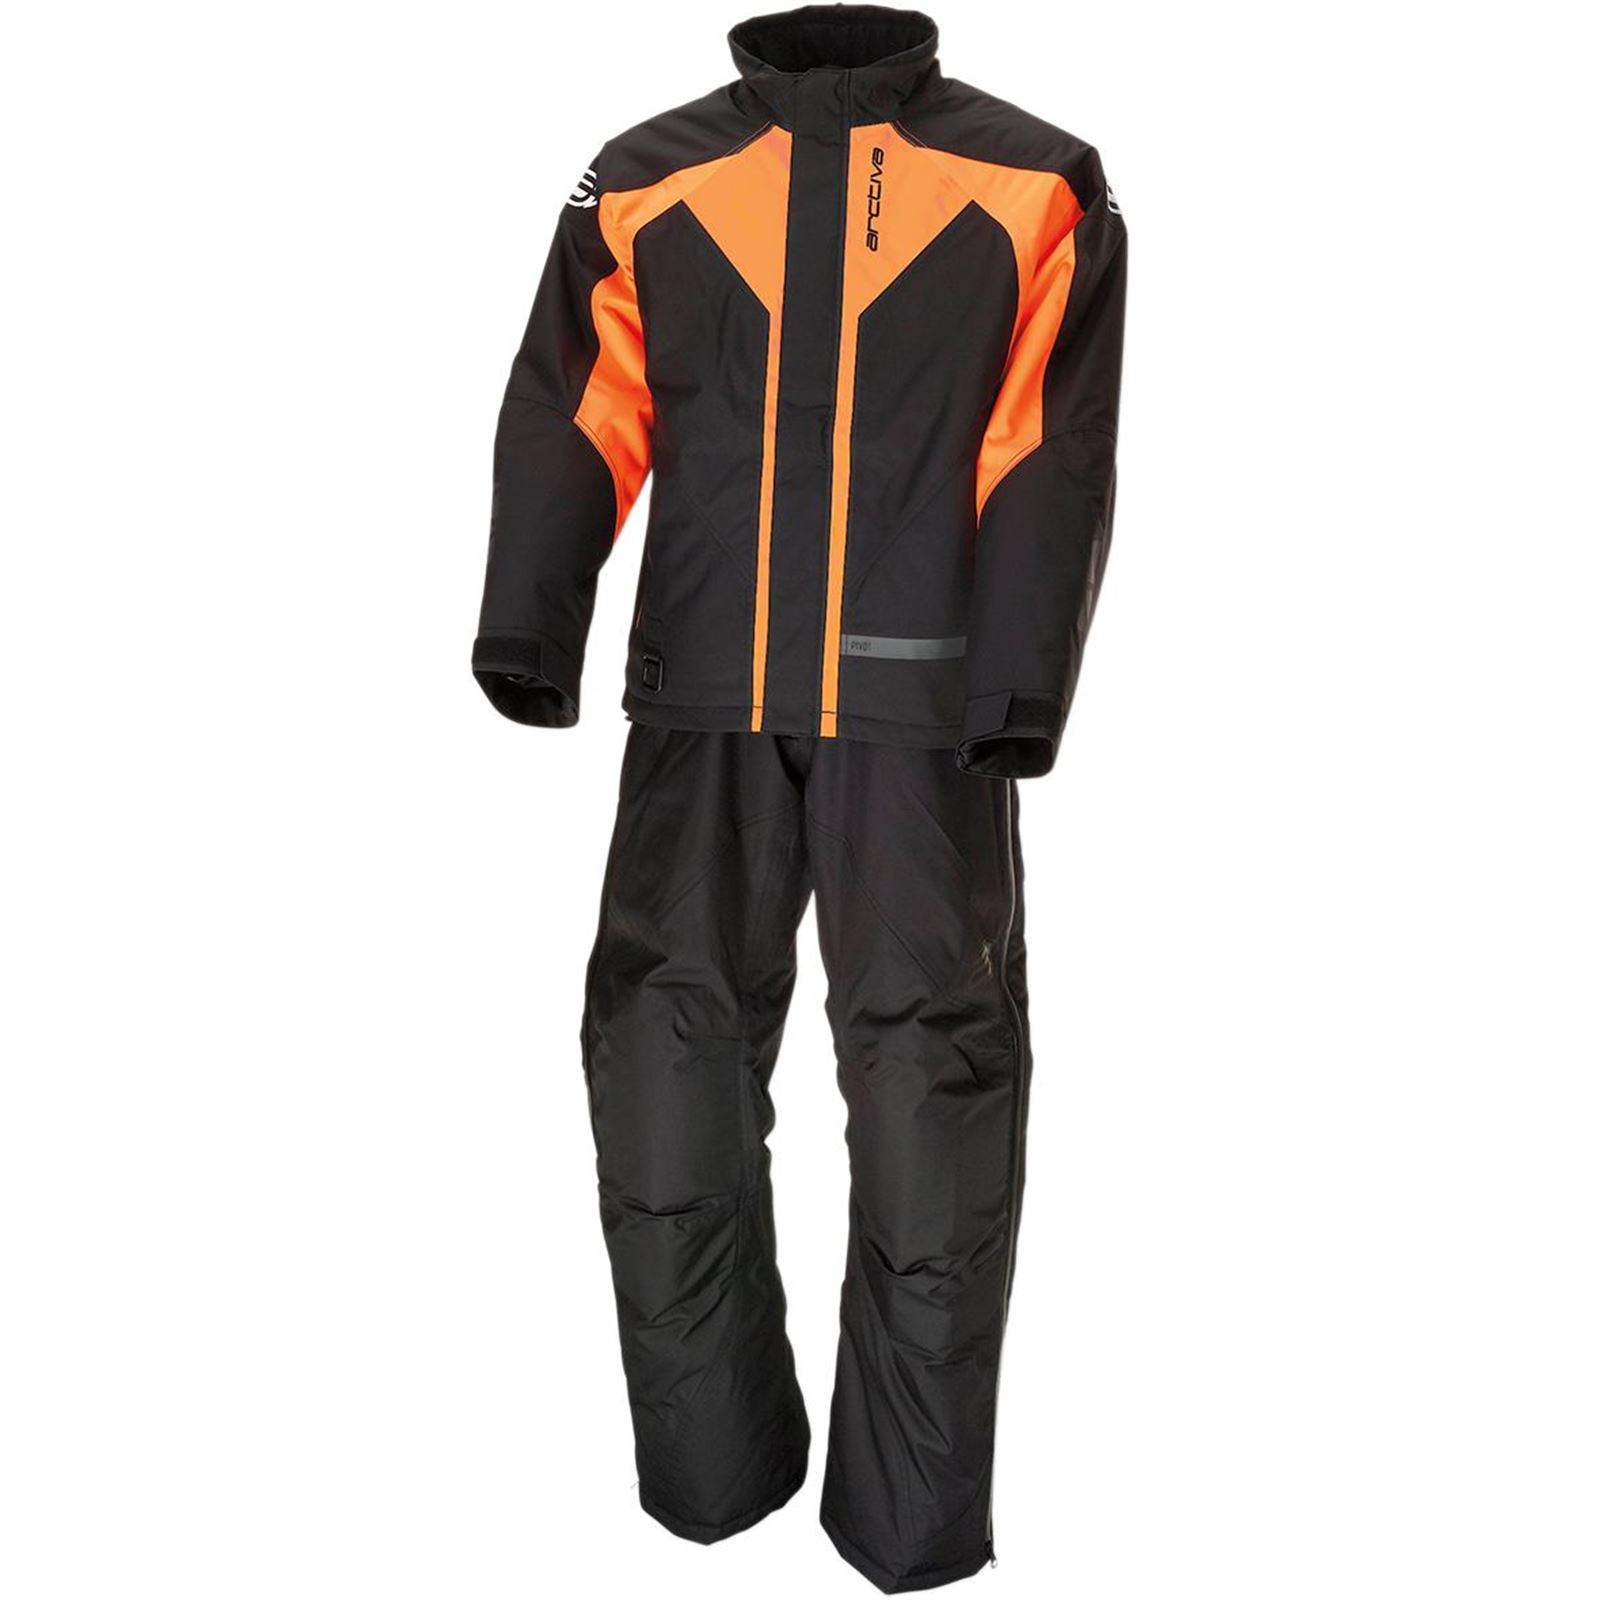 Arctiva Pivot 3 Jacket - Black/Orange - 3X-Large